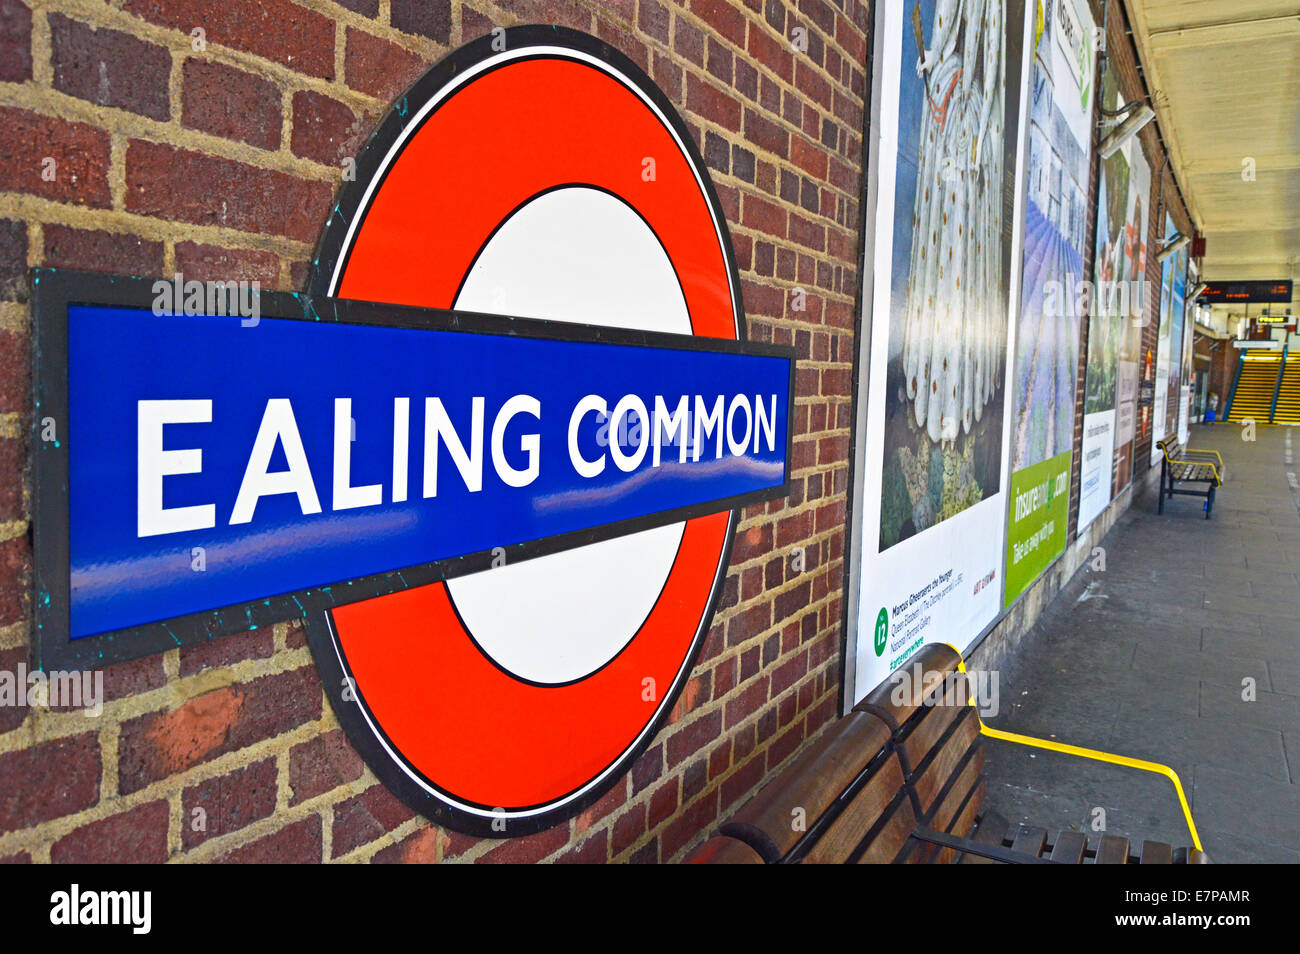 Ealing Common Tube Station roundel, London Borough of Ealing, London, England, United Kingdom Stock Photo